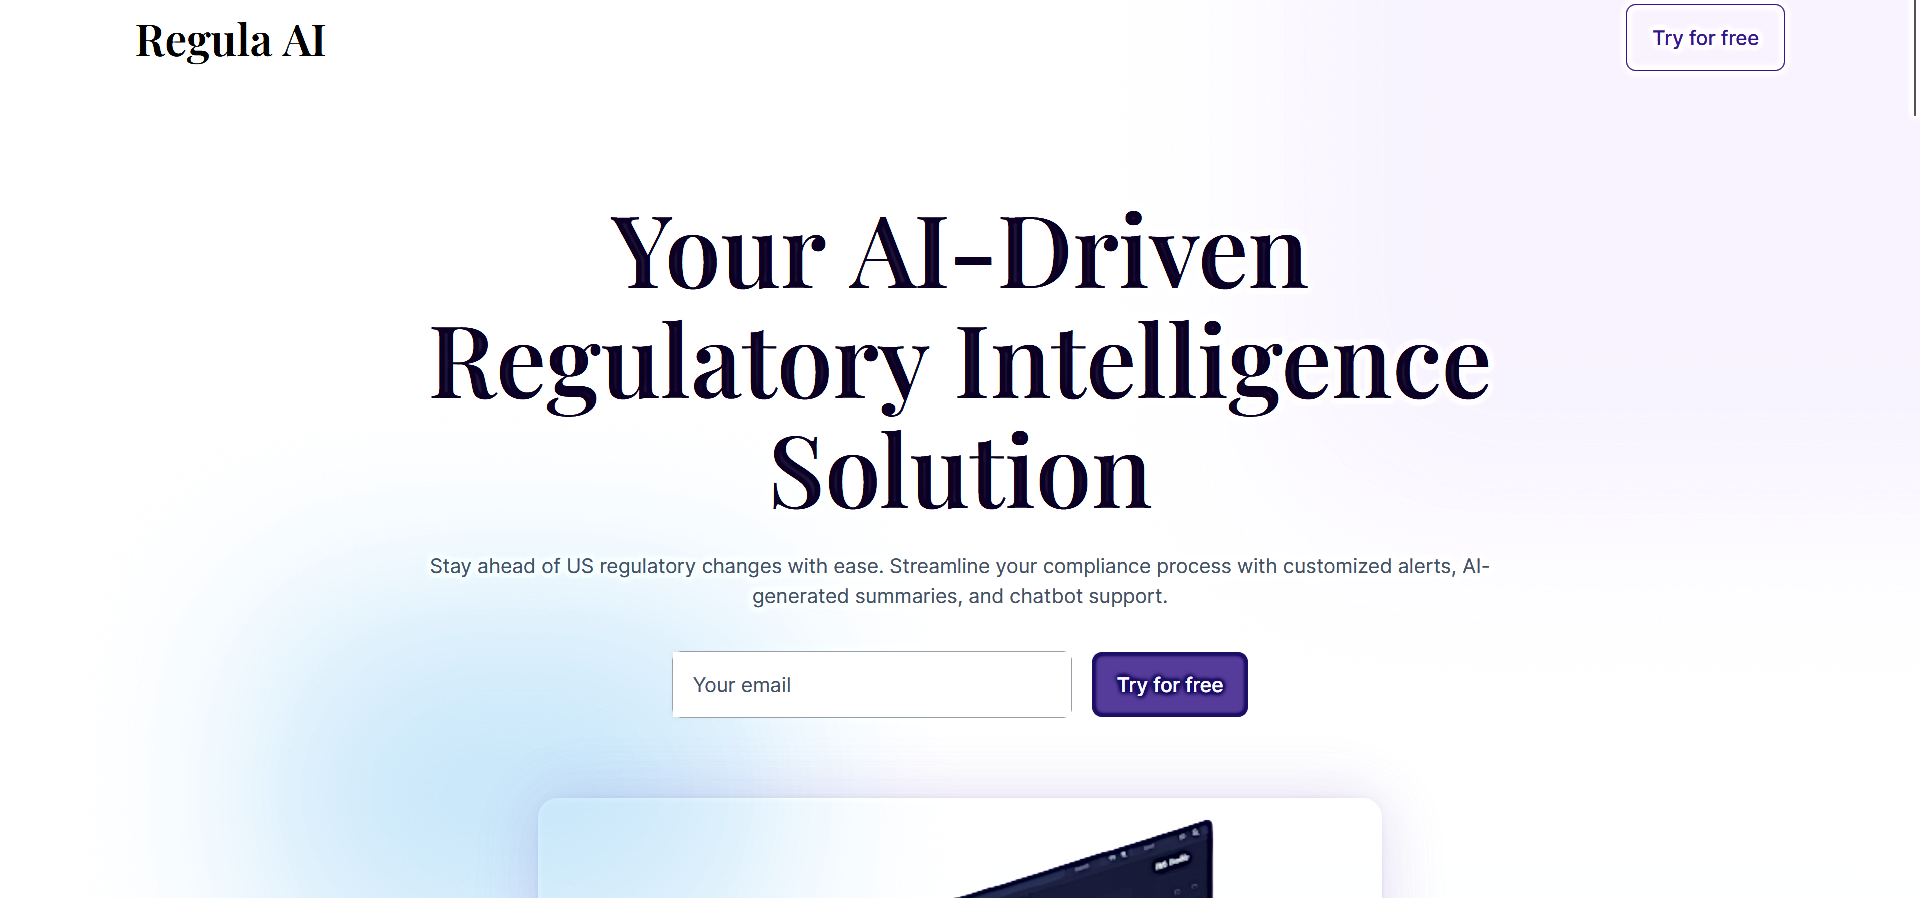 Regula AI featured